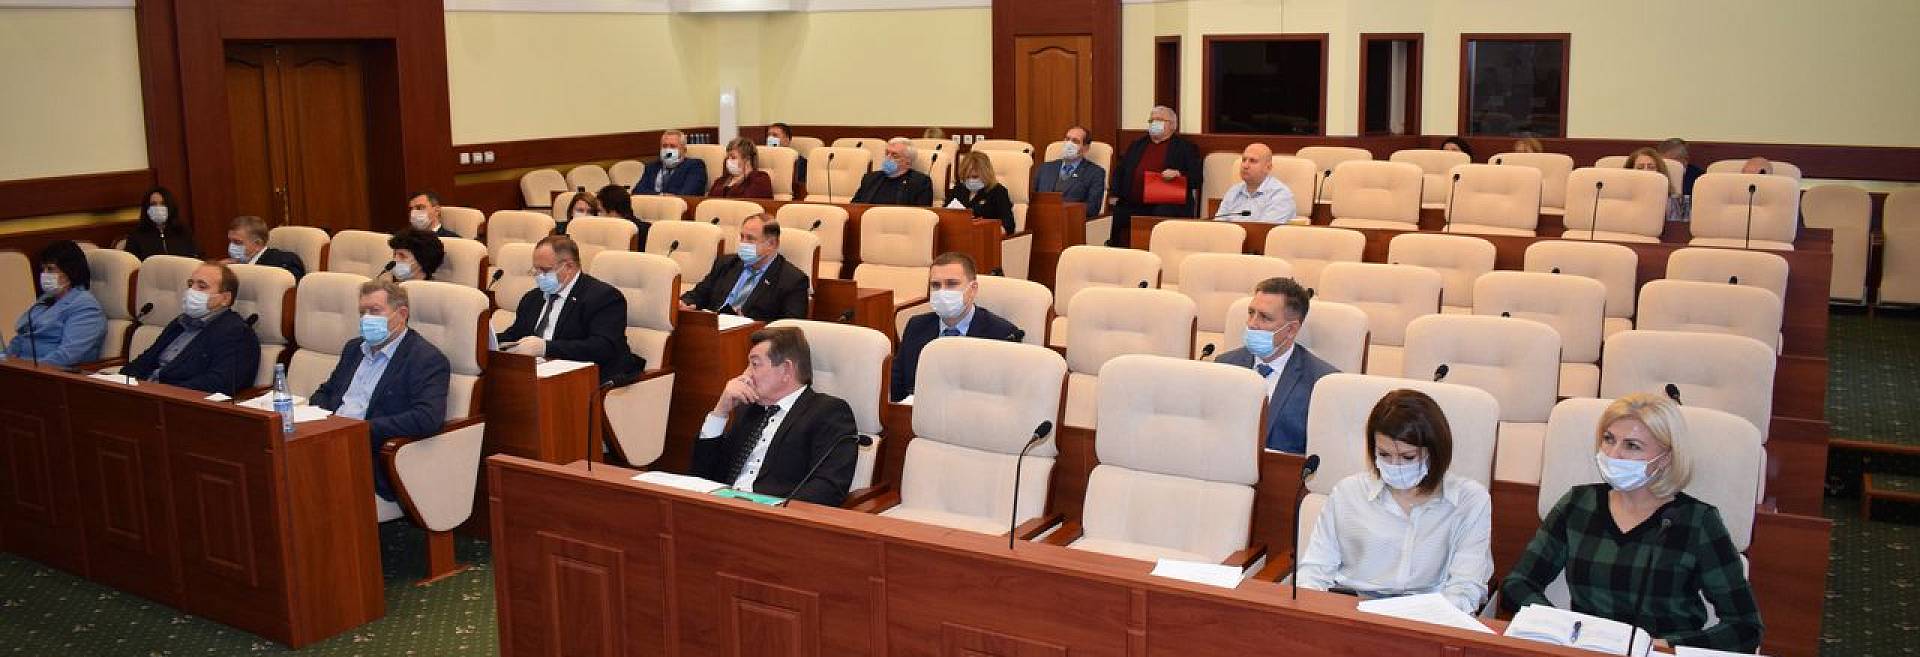 В публичных слушаниях по проекту областного бюджета принял участие Центр компетенций в АПК Курской области